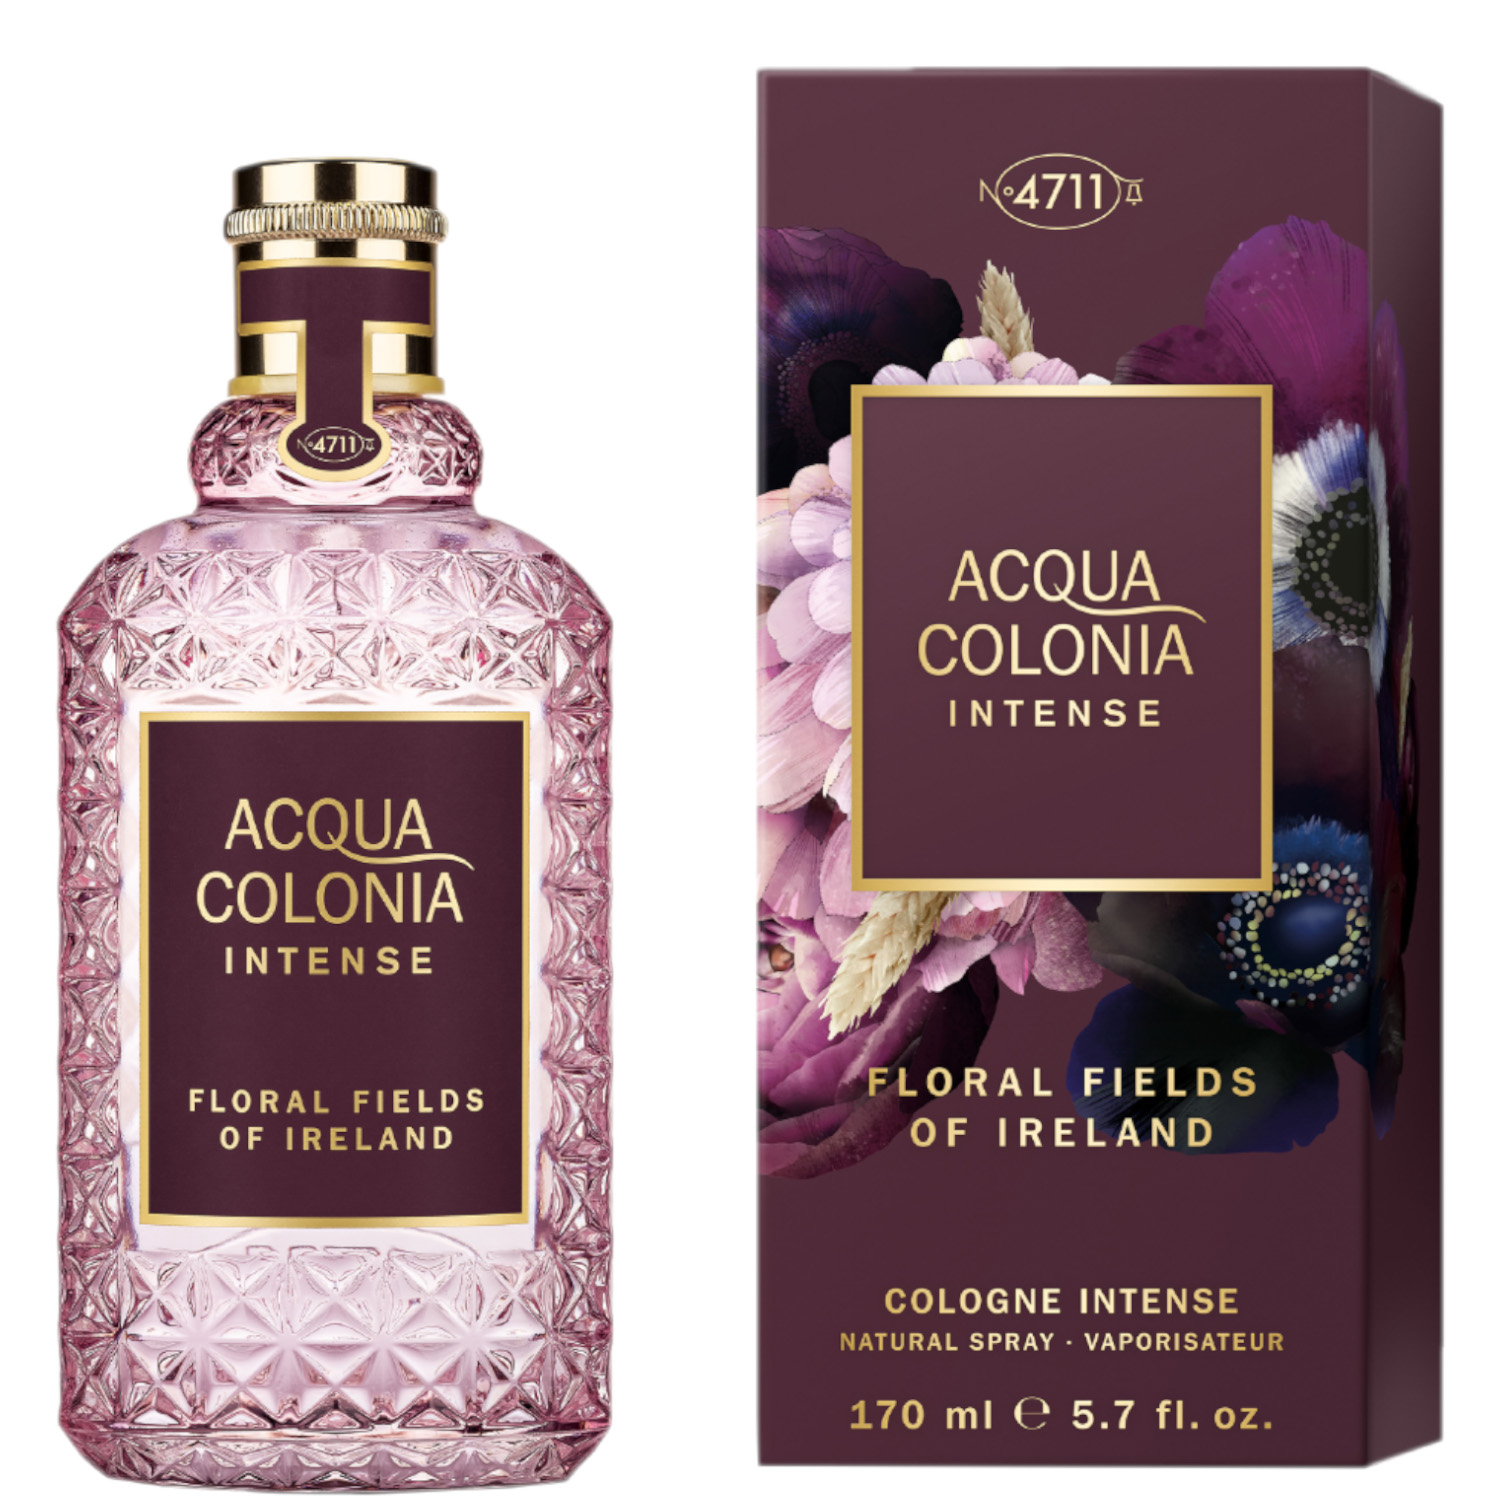 4711 Acqua Colonia Floral Fields of Ireland Eau de Cologne Intense 170ml